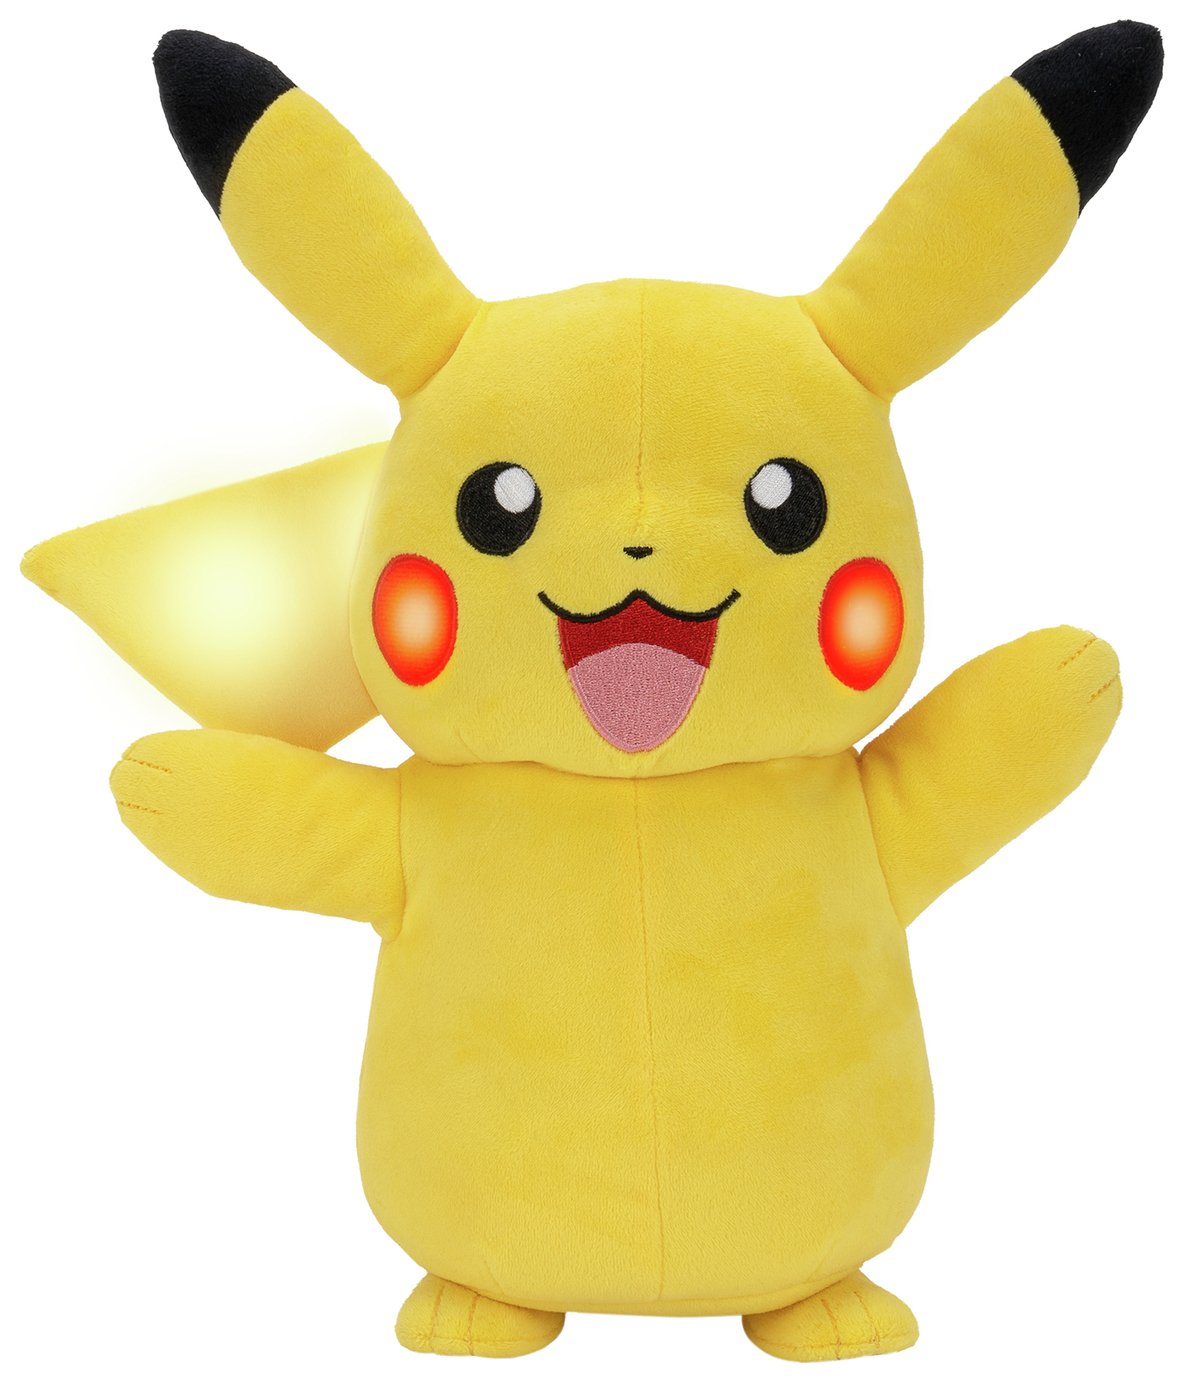 Pokémon Electric Charge Pikachu Plush